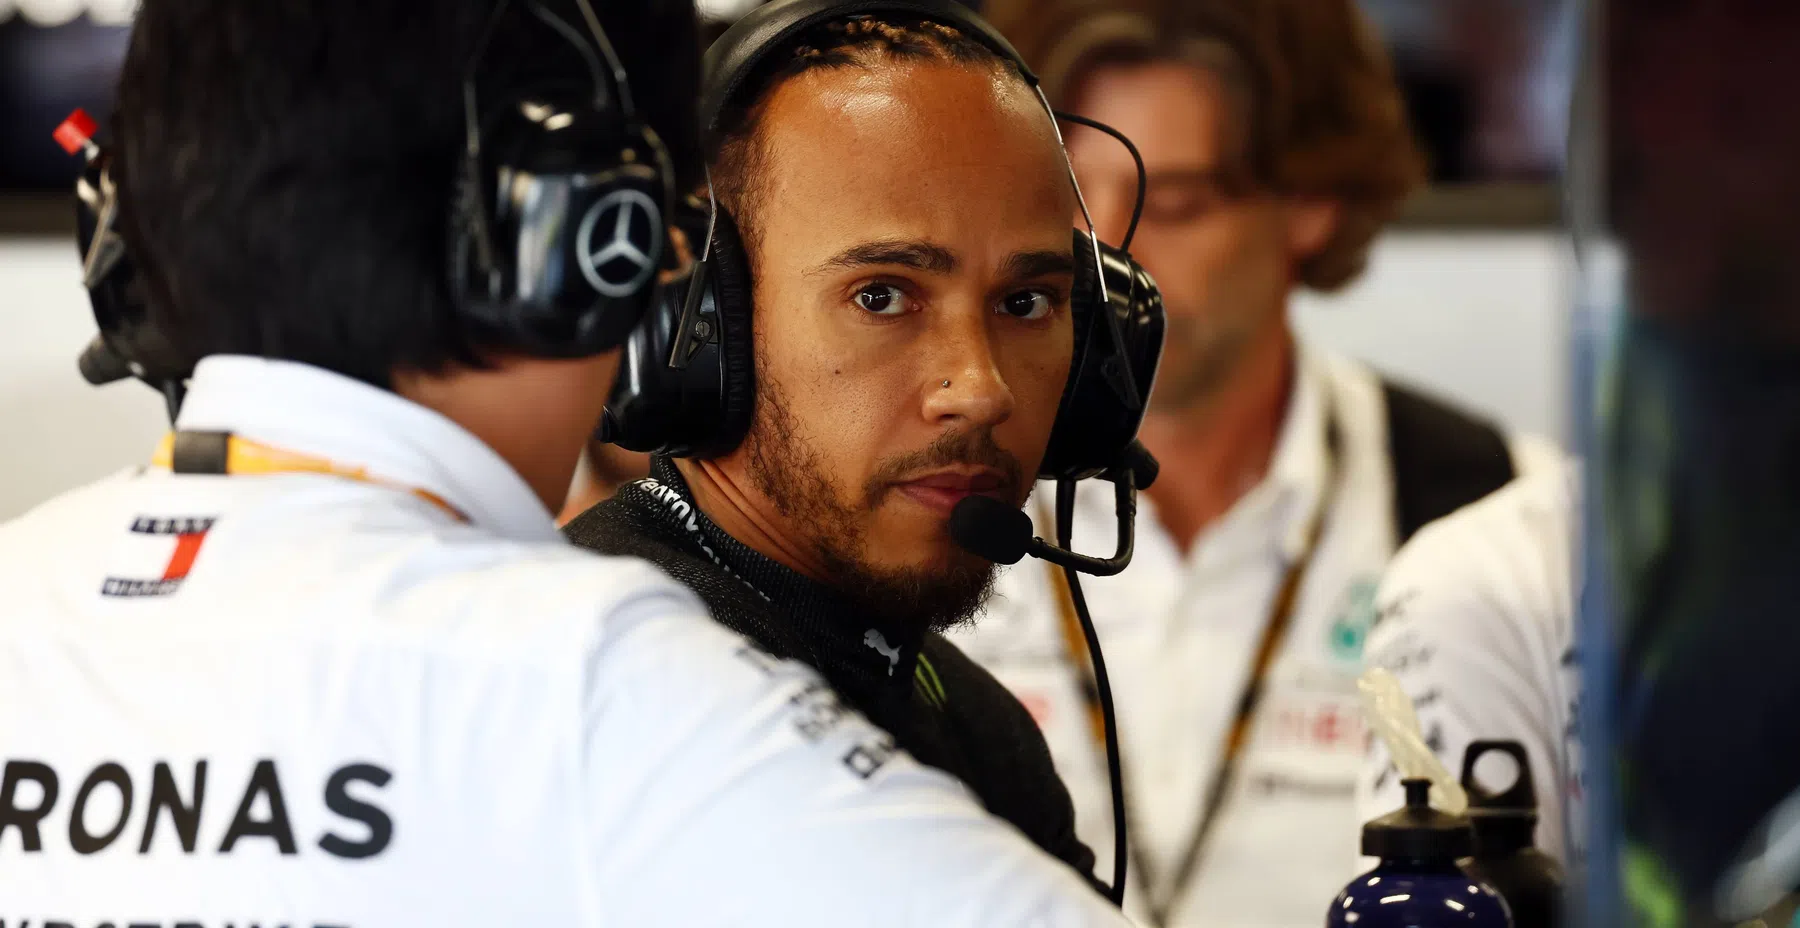 Hamilton dankbaar ondanks moeilijk jaar in F1